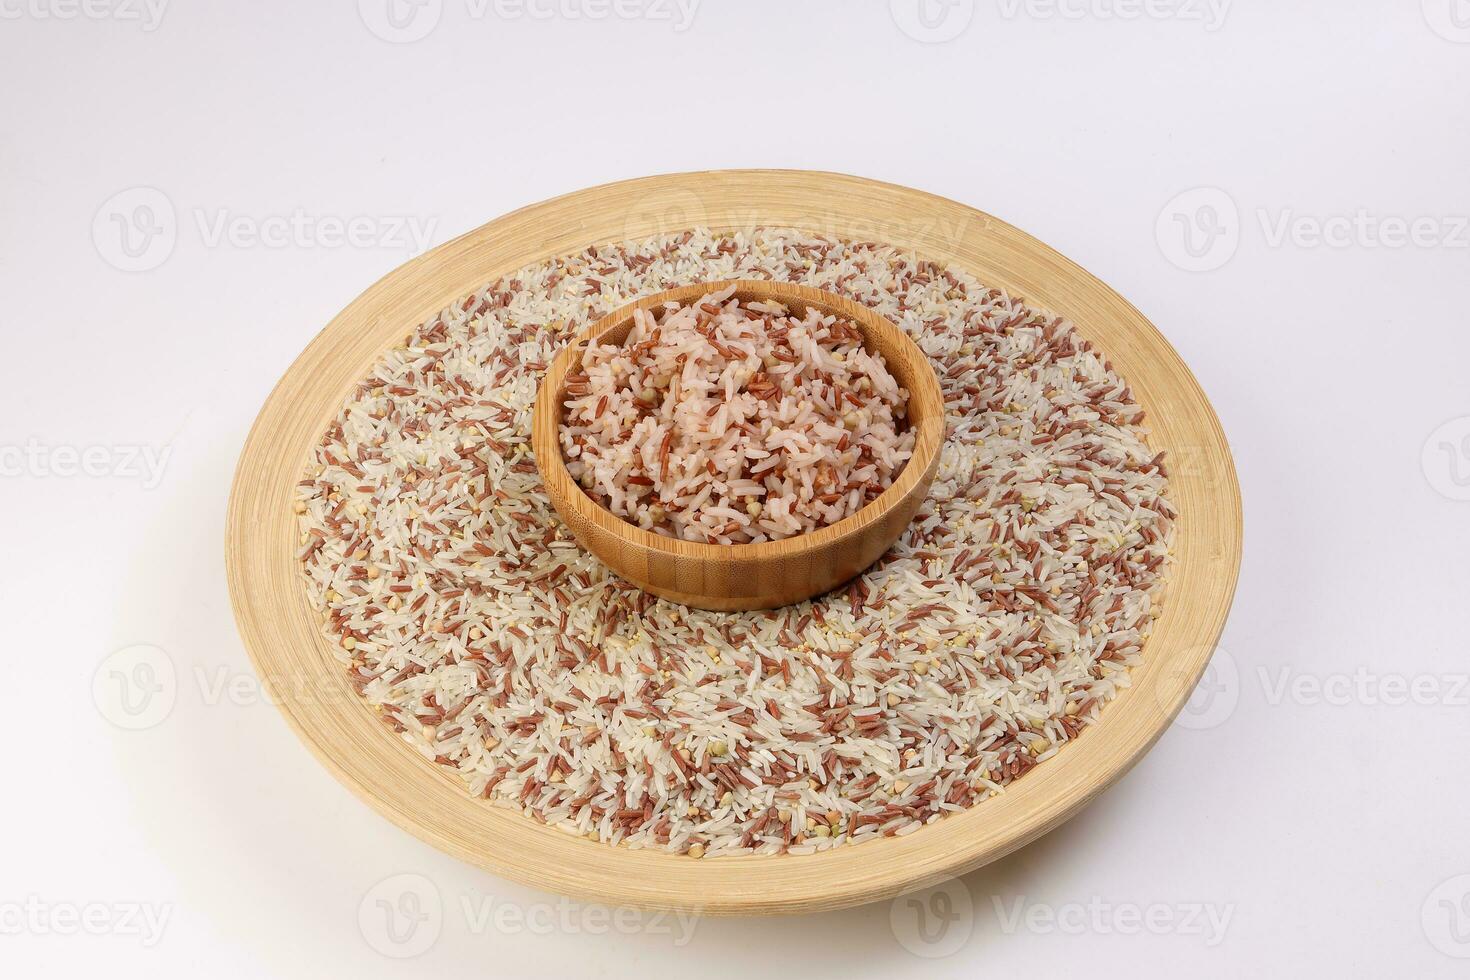 gekocht und roh gemischt niedrig glykämisch Index gesund Reis Korn Basmati Hirse Buchweizen rot Reis im hölzern Schüssel Über hölzern Teller auf Weiß Hintergrund foto